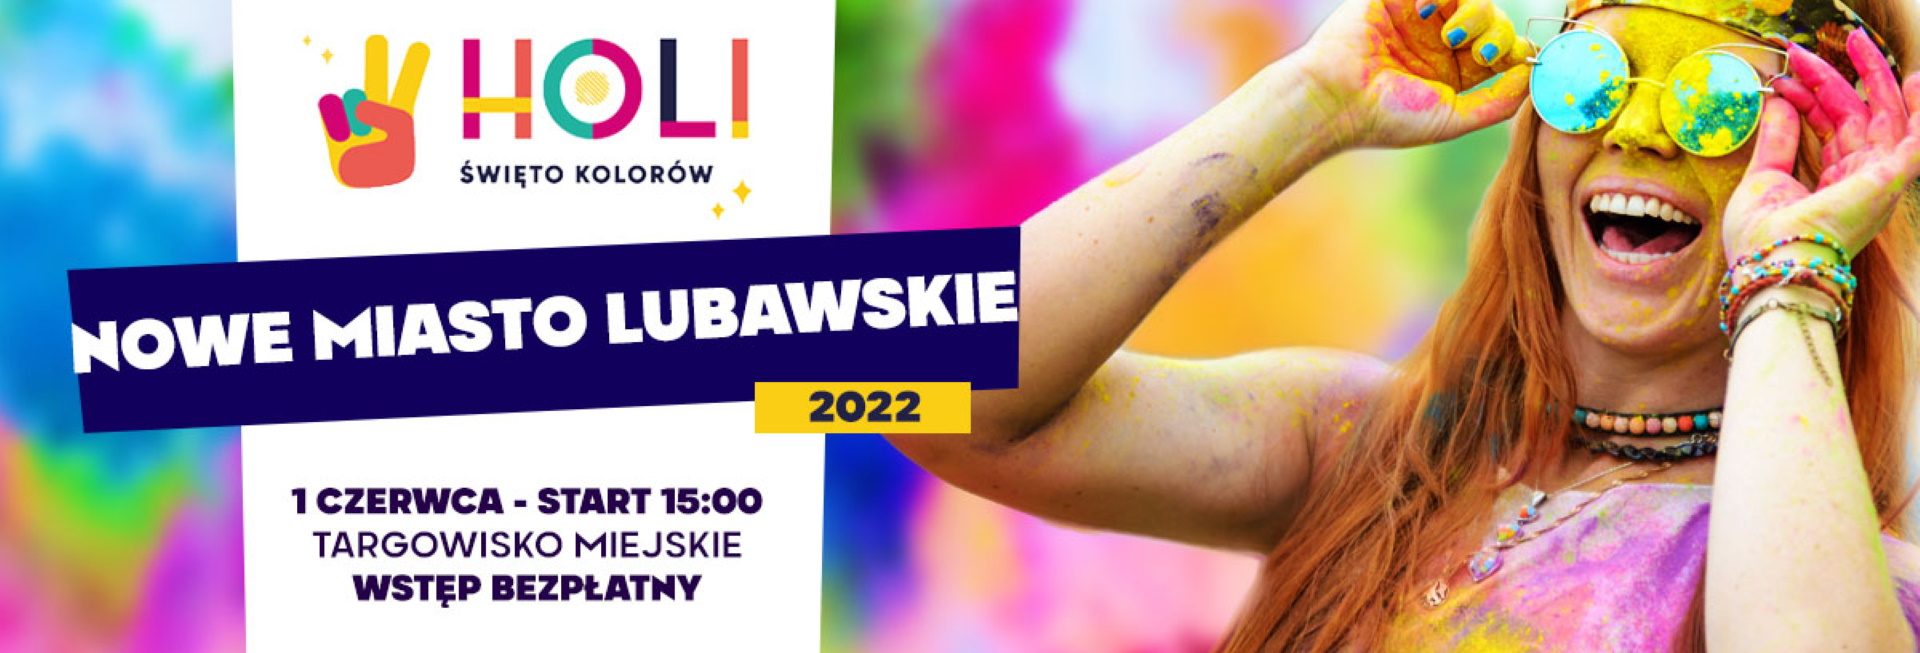 Plakat graficzny zapraszający do Nowego Miasta Lubawskiego na Holi Święto Kolorów w Nowym Mieście Lubawskim 2022.